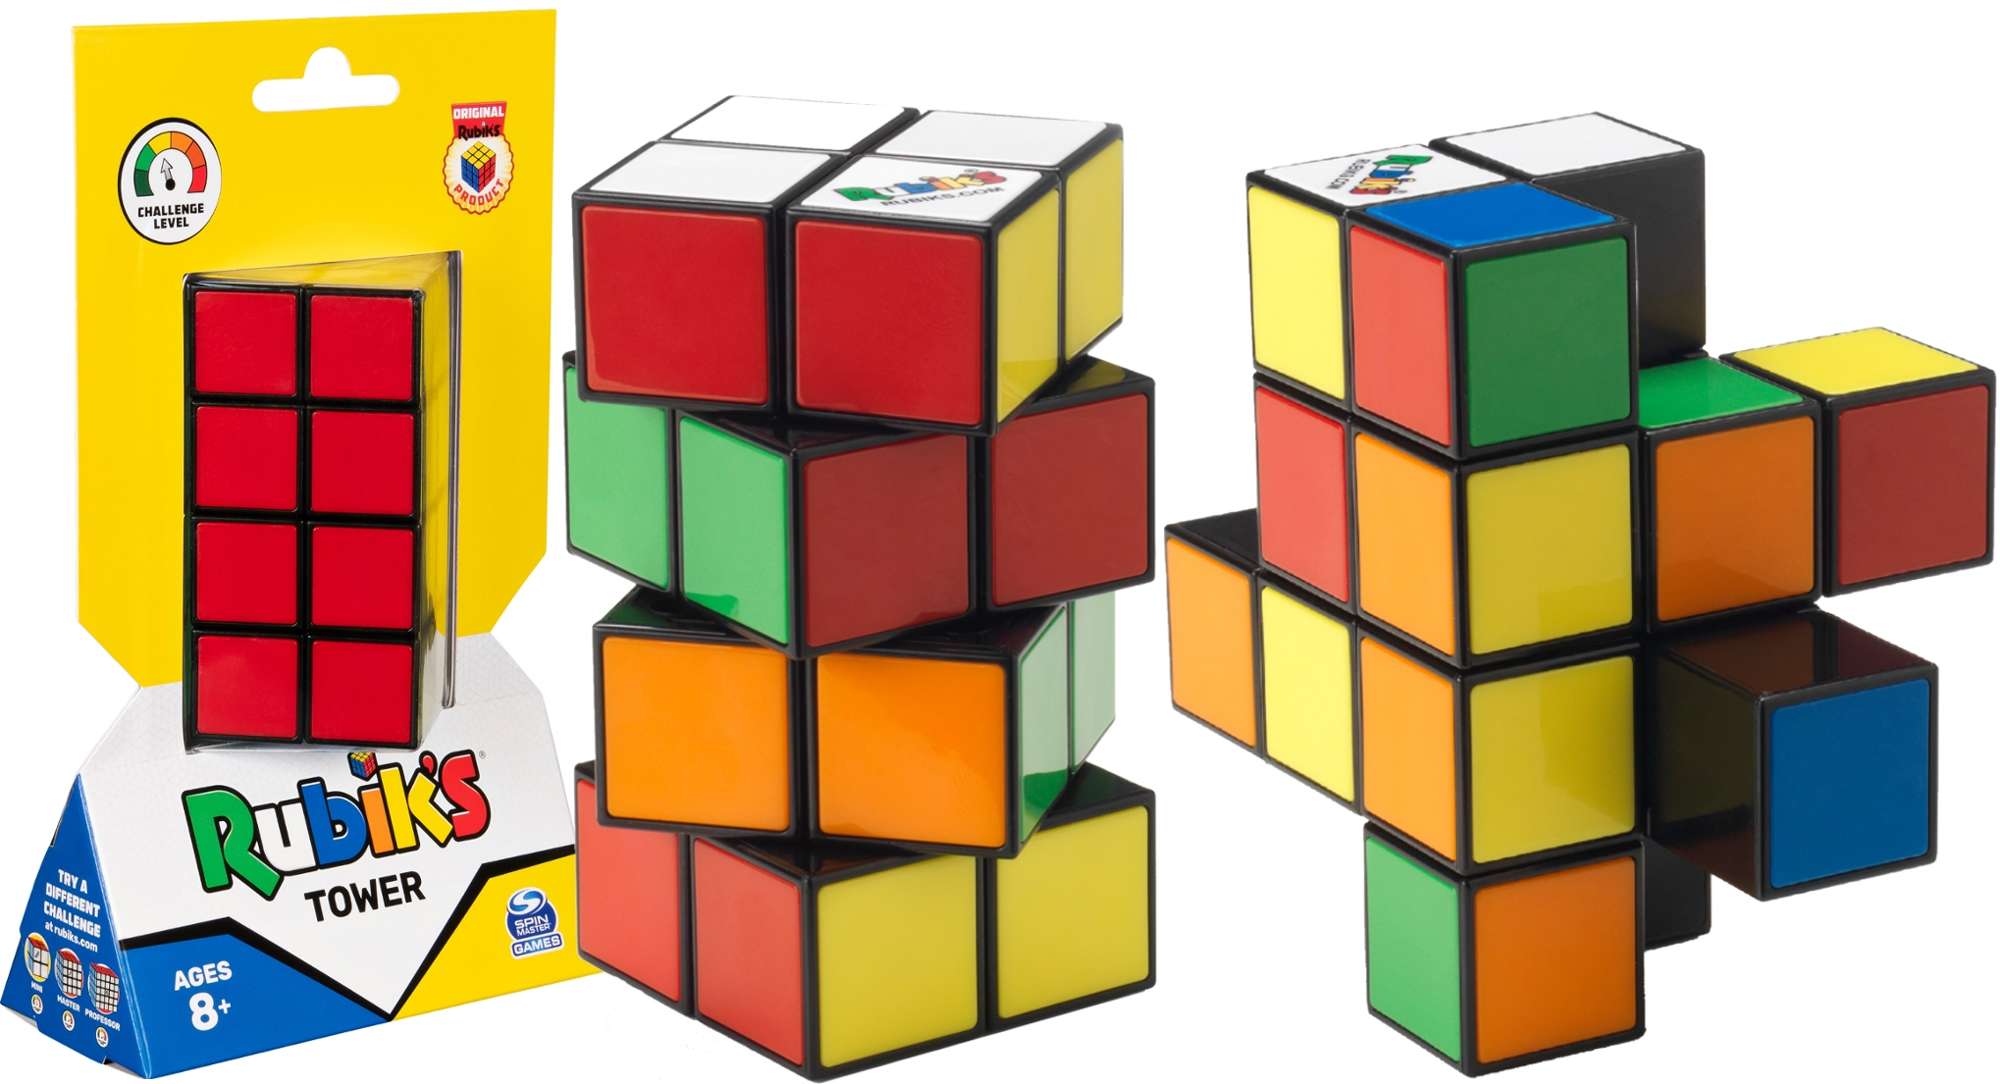 Kostka Rubika oryginalna Rubik's Tower wiea ukadanka 2x4